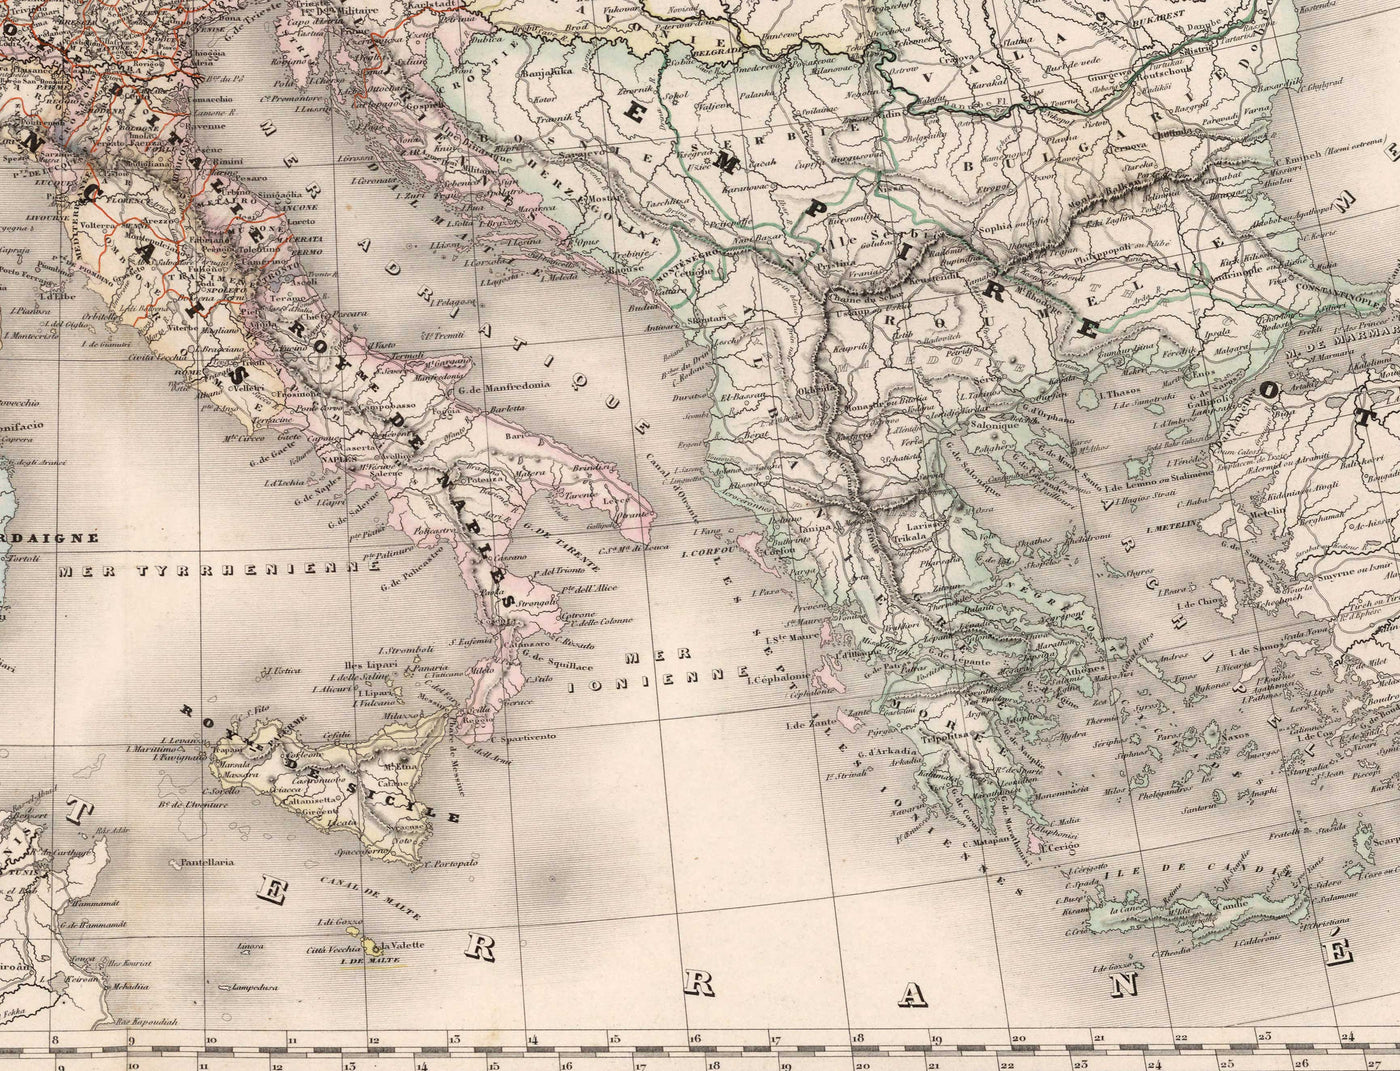 Antiguo mapa del Imperio francés por Charles Dyonnet en 1864 - Napoleón, Francia, Italia, España, Islas Británicas